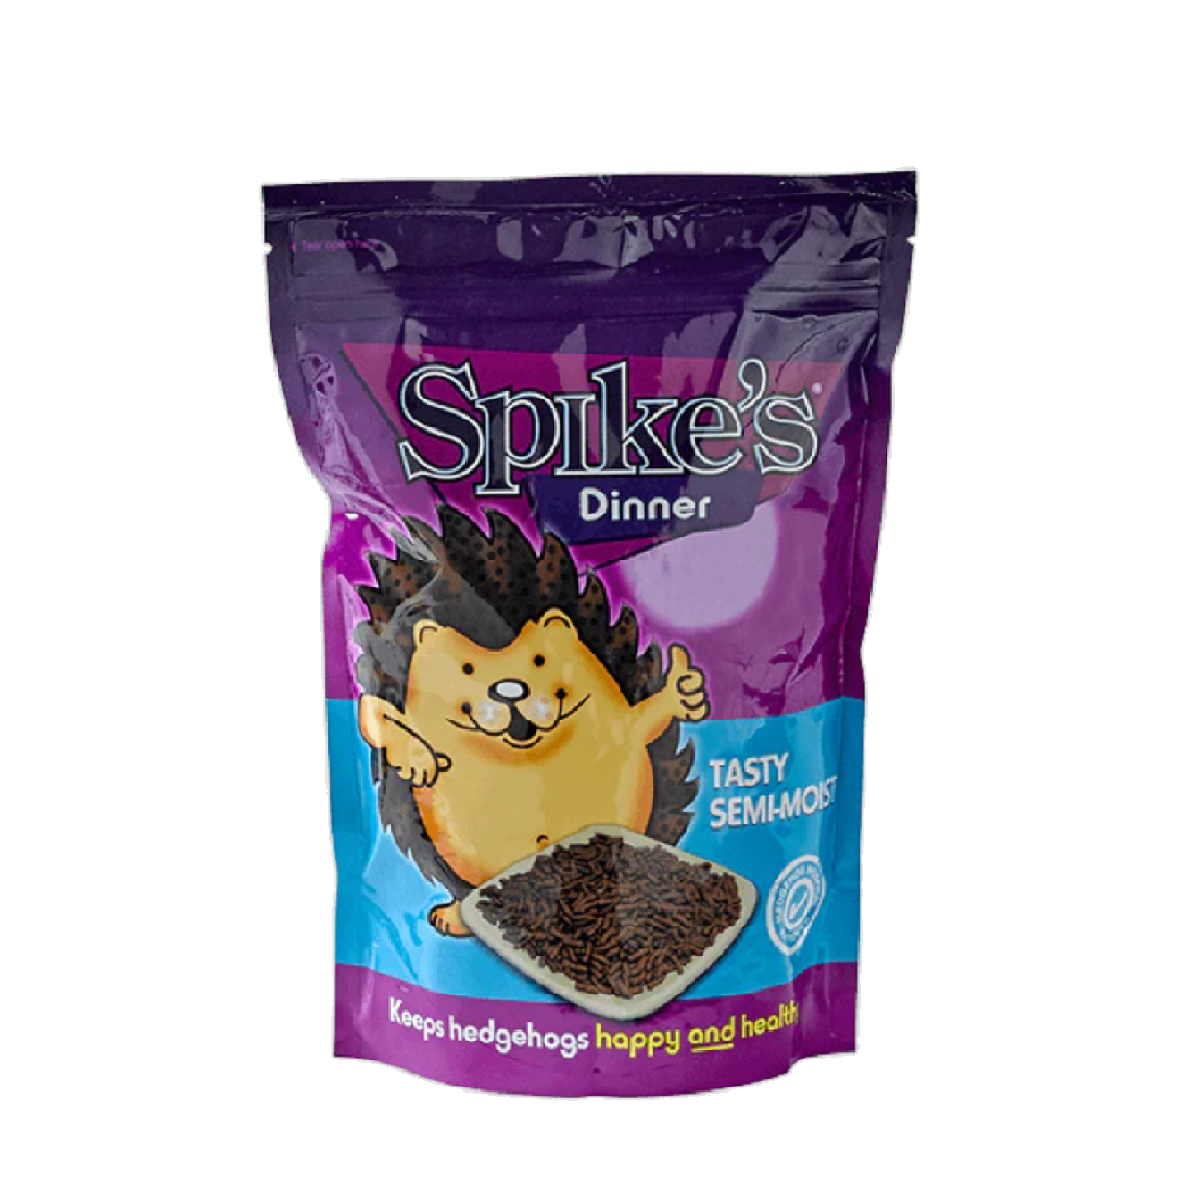 Spikes - Tasty Semi-Moist Hedgehog Food